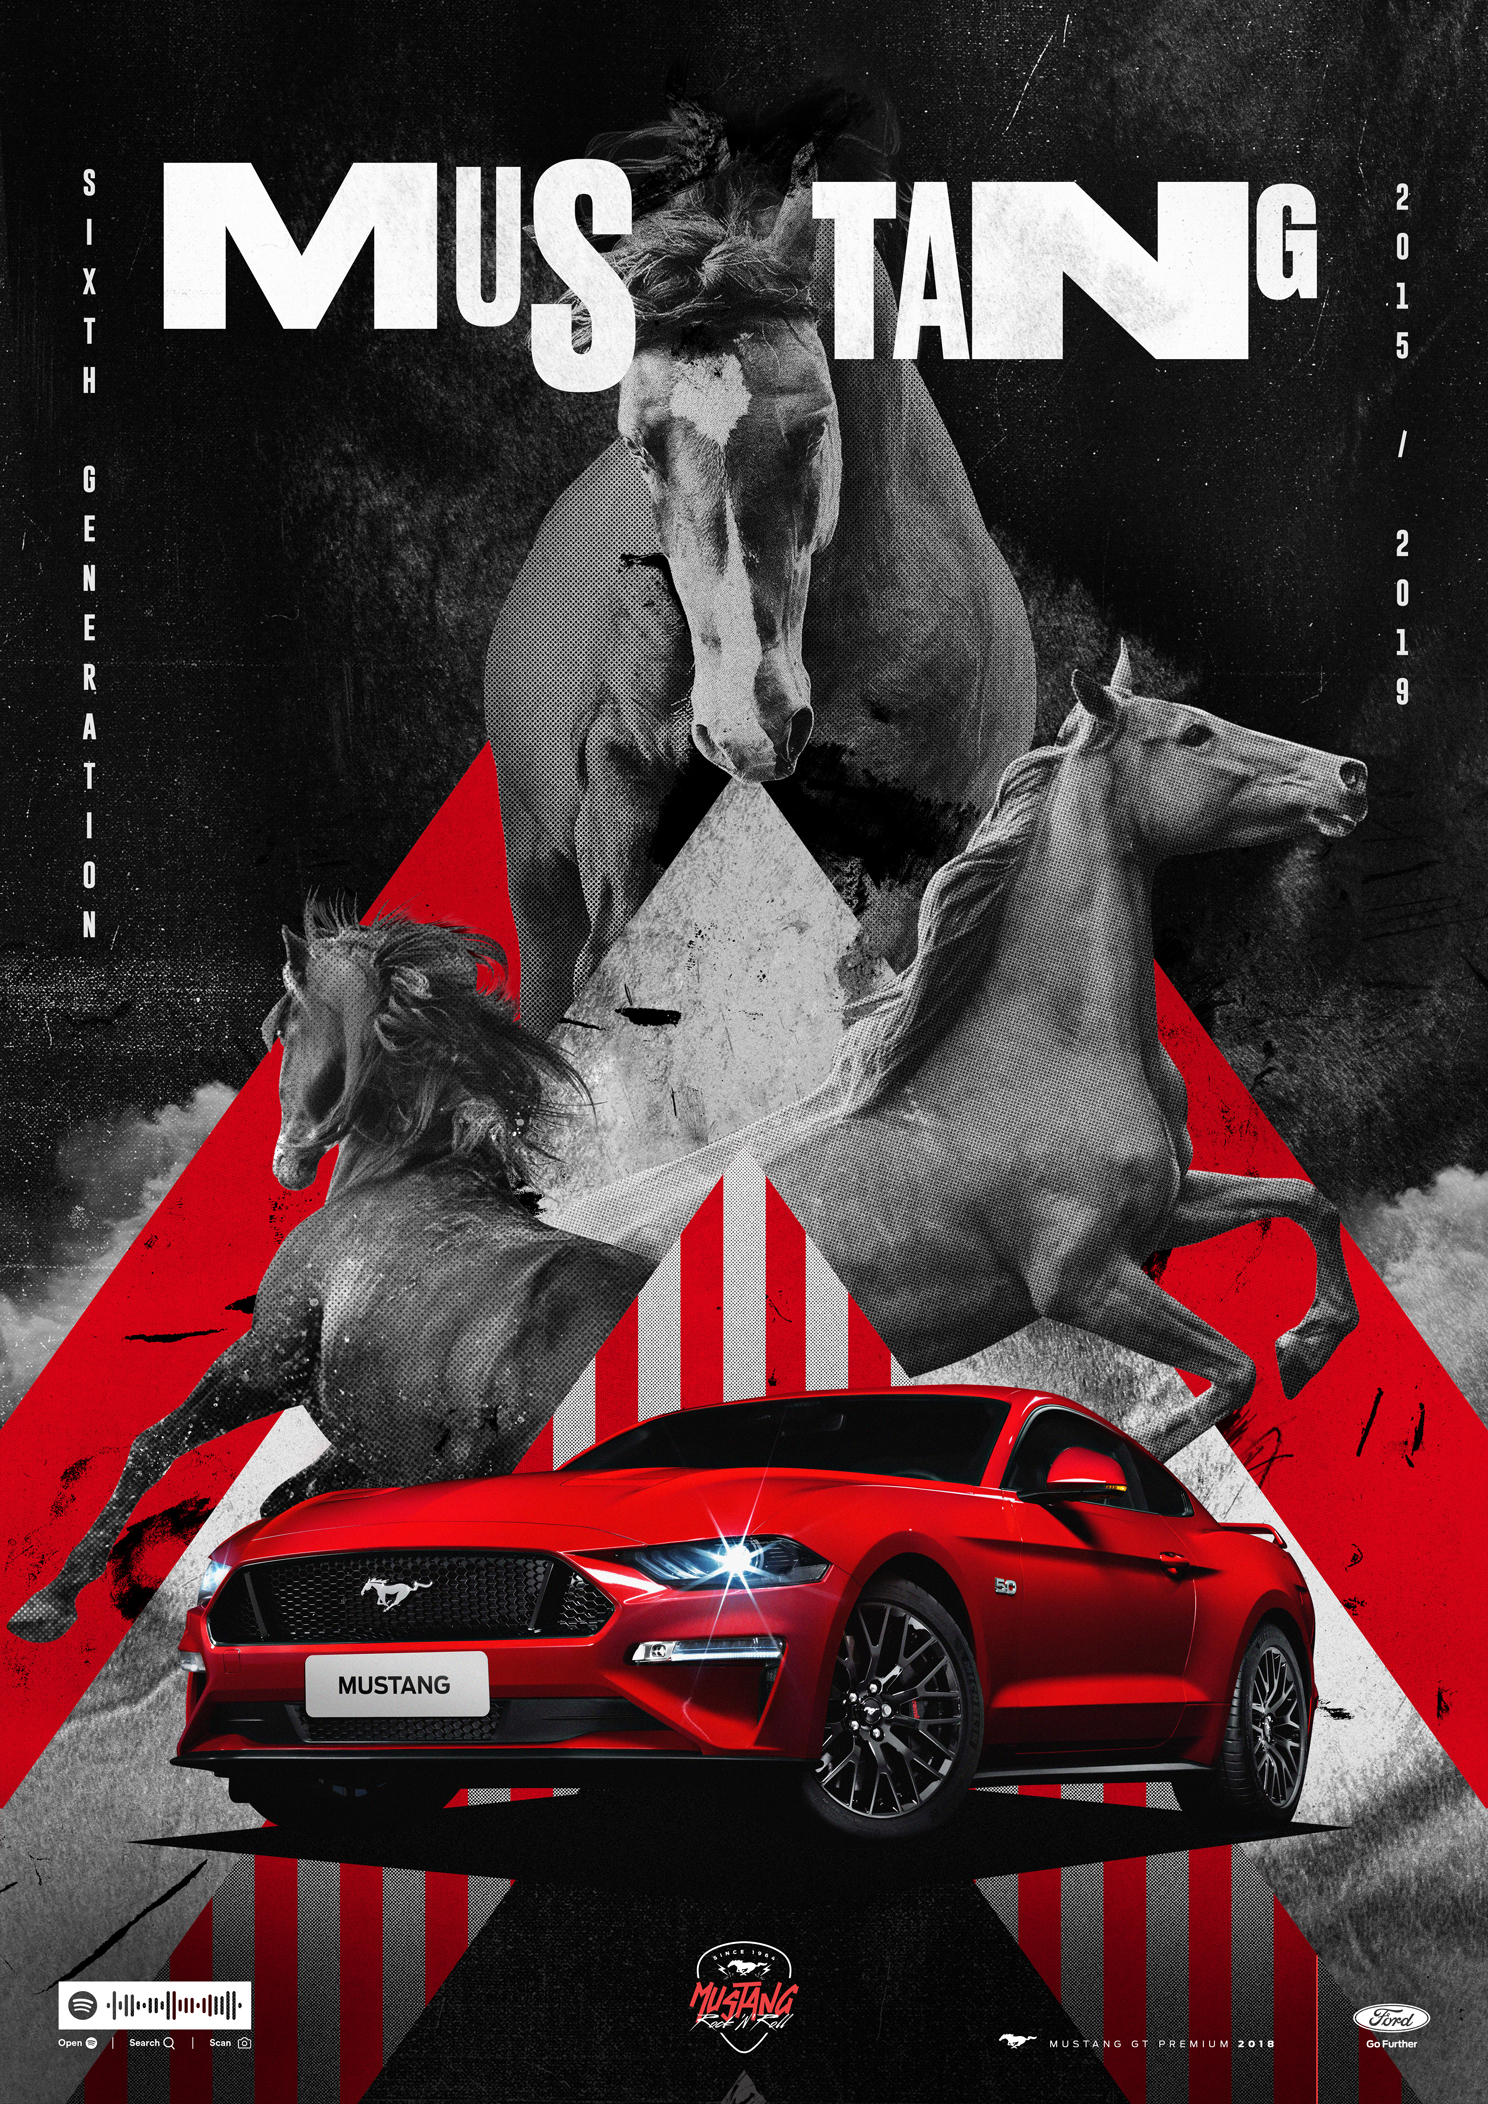 Mustang_Poster_6Generation_EN.jpg